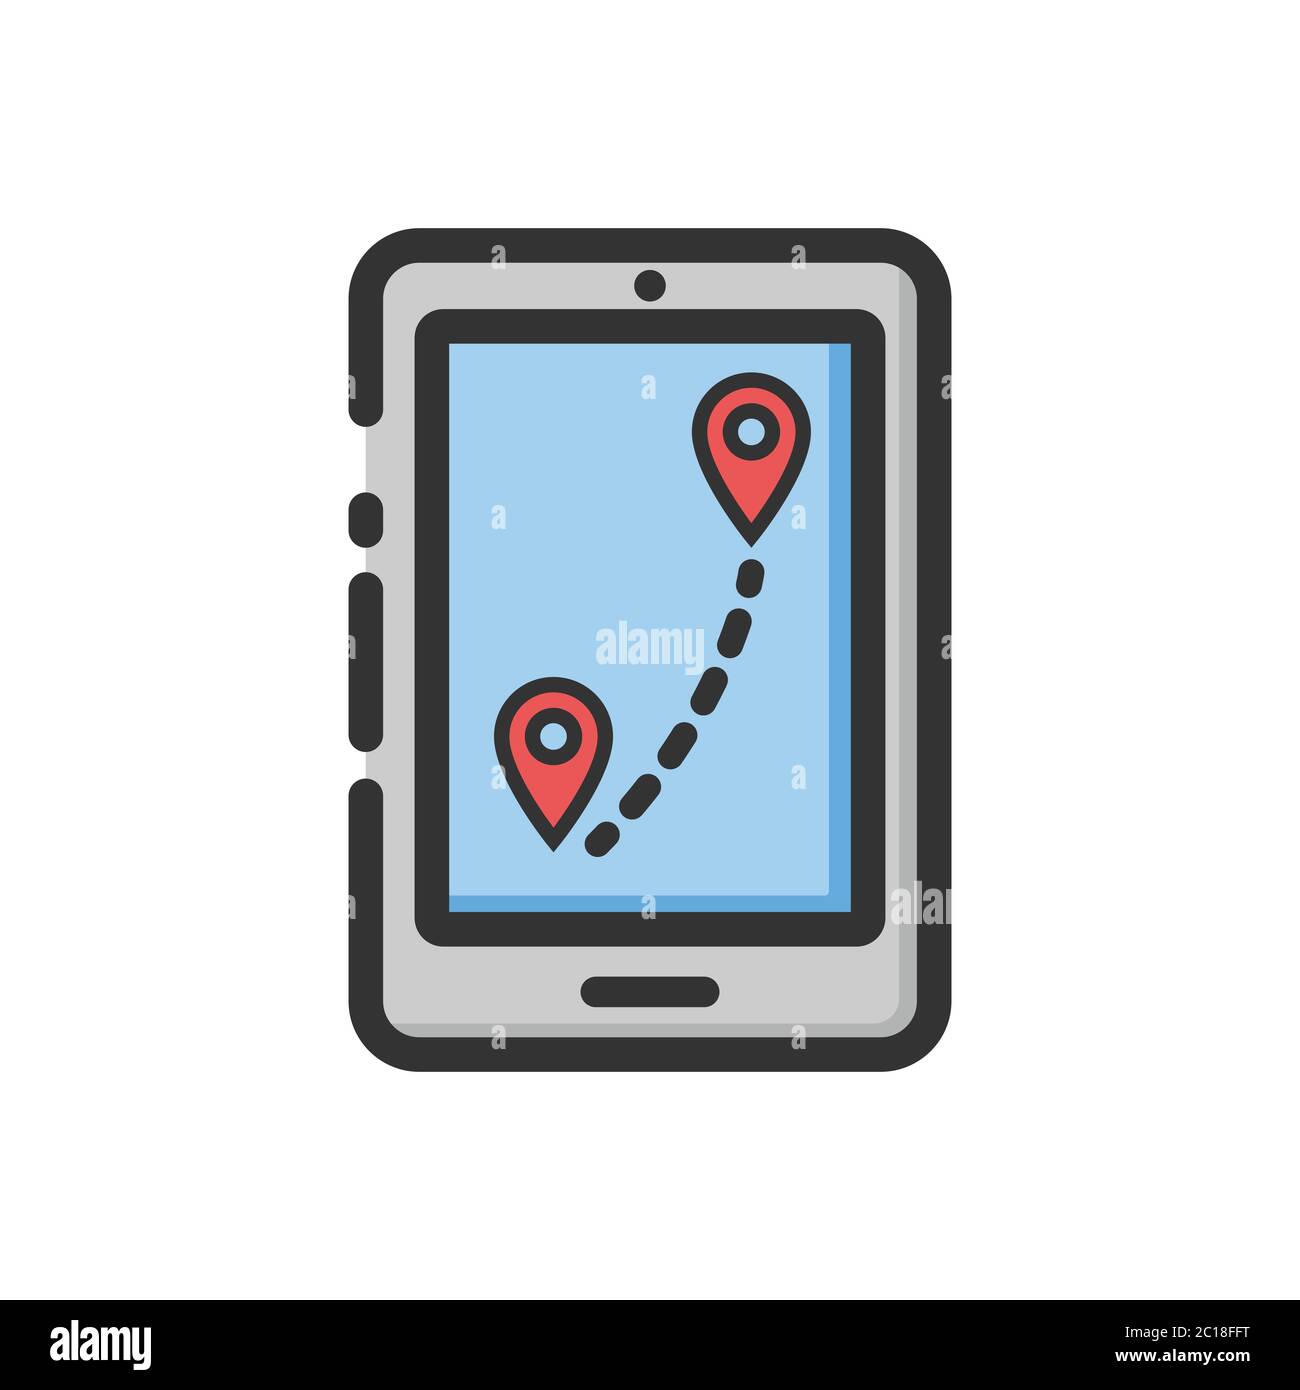 Trova la direzione di un luogo utilizzando l'app Locator nello smartphone. Adatto per l'illustrazione vettoriale del localizzatore di mappe per individuare la posizione precisa da un'area. Illustrazione Vettoriale